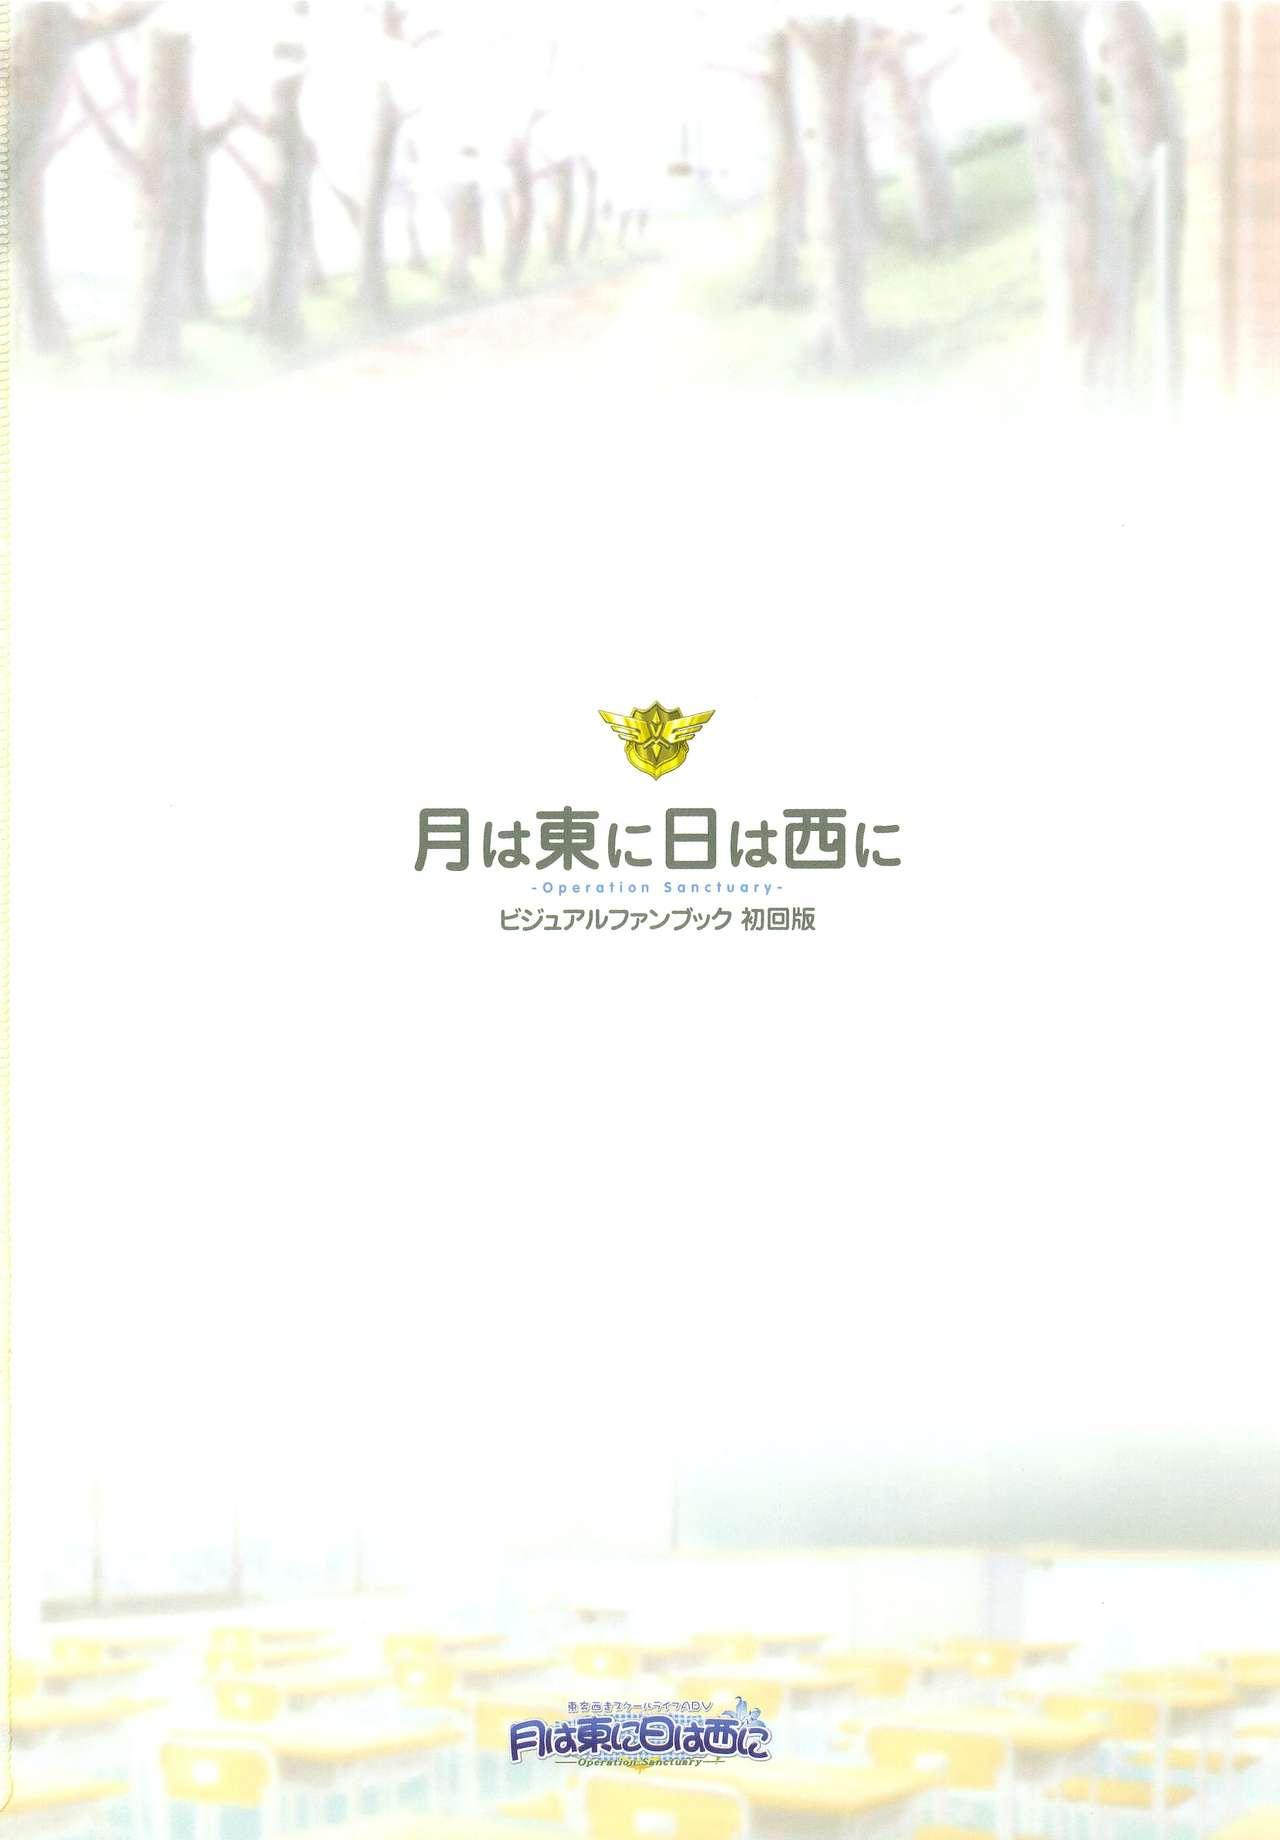 Tsuki wa Higashi ni Hi wa Nishi ni - Operation Sanctuary - Visual Fan Book Shokai Ban 6